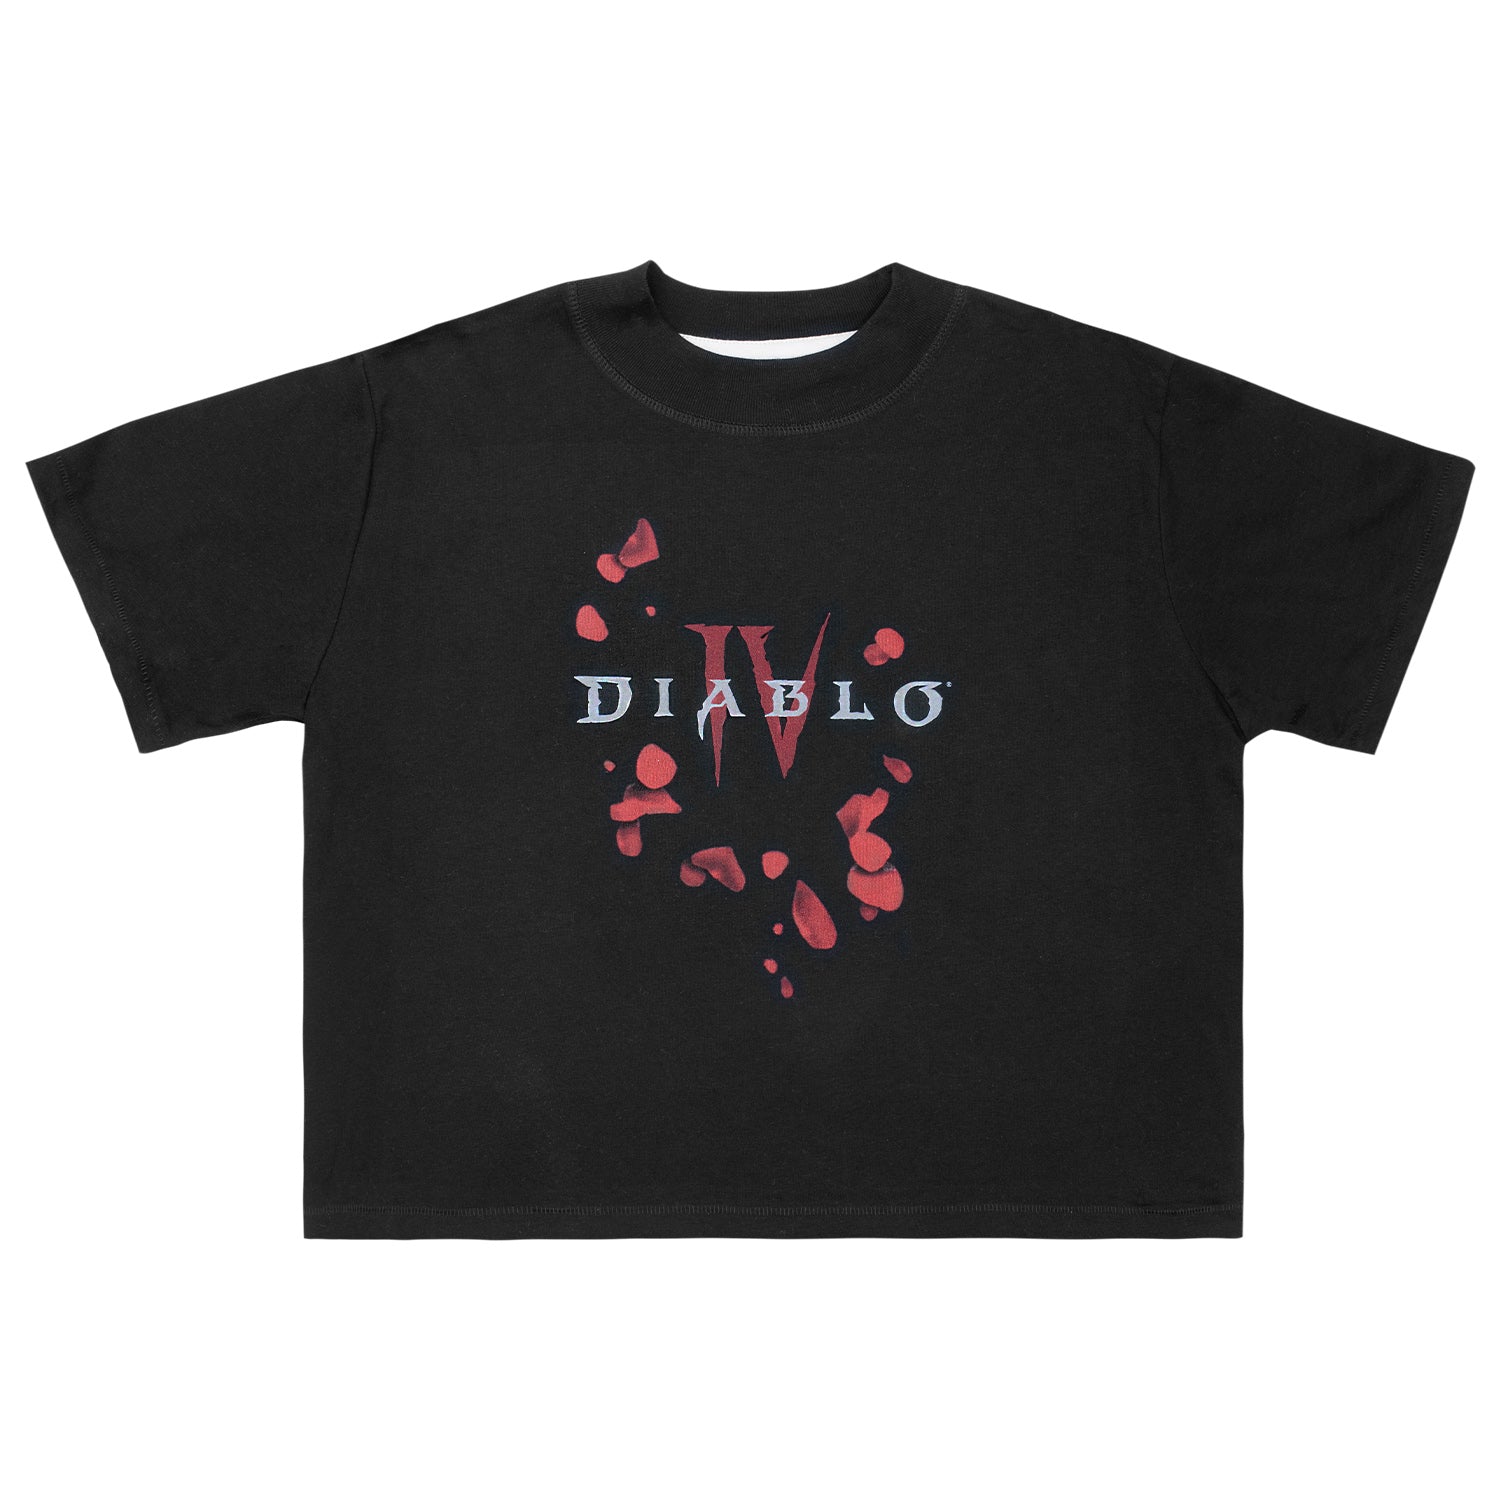 Diablo IV Petals Women's Cropped Black T-Shirt - Front View